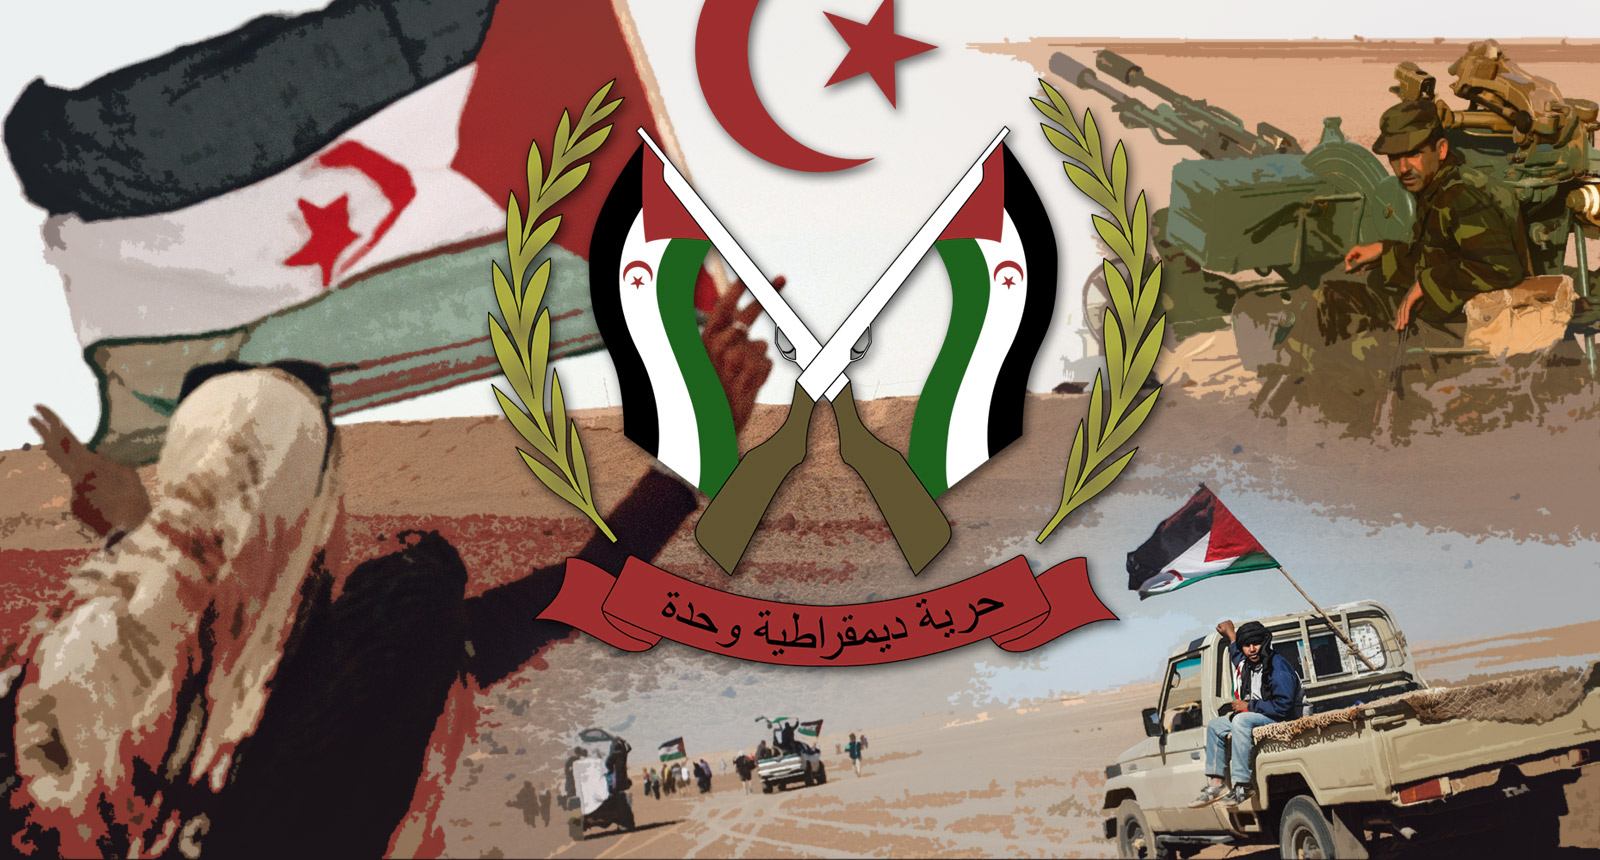 Batı Sahra: Polisario Rabat’la Diyaloğa Hazır